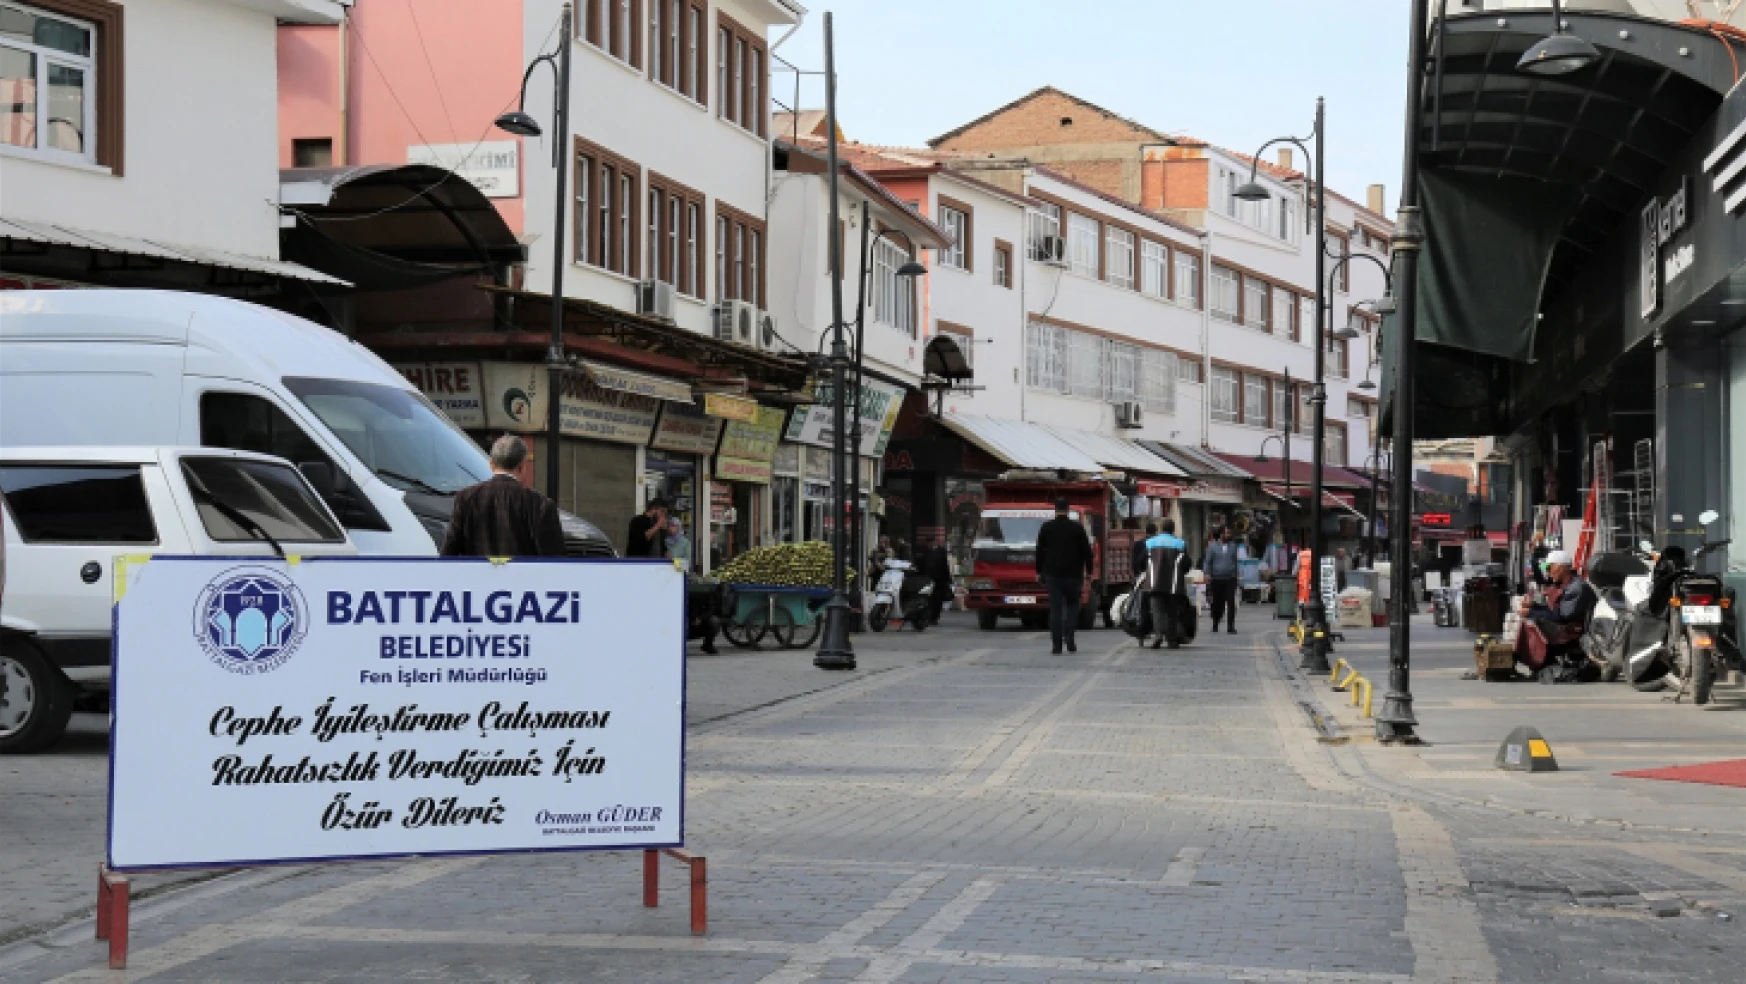 Battalgazi'deki 6 Sokakta Sağlıklaştırma Çalışmaları Sürüyor